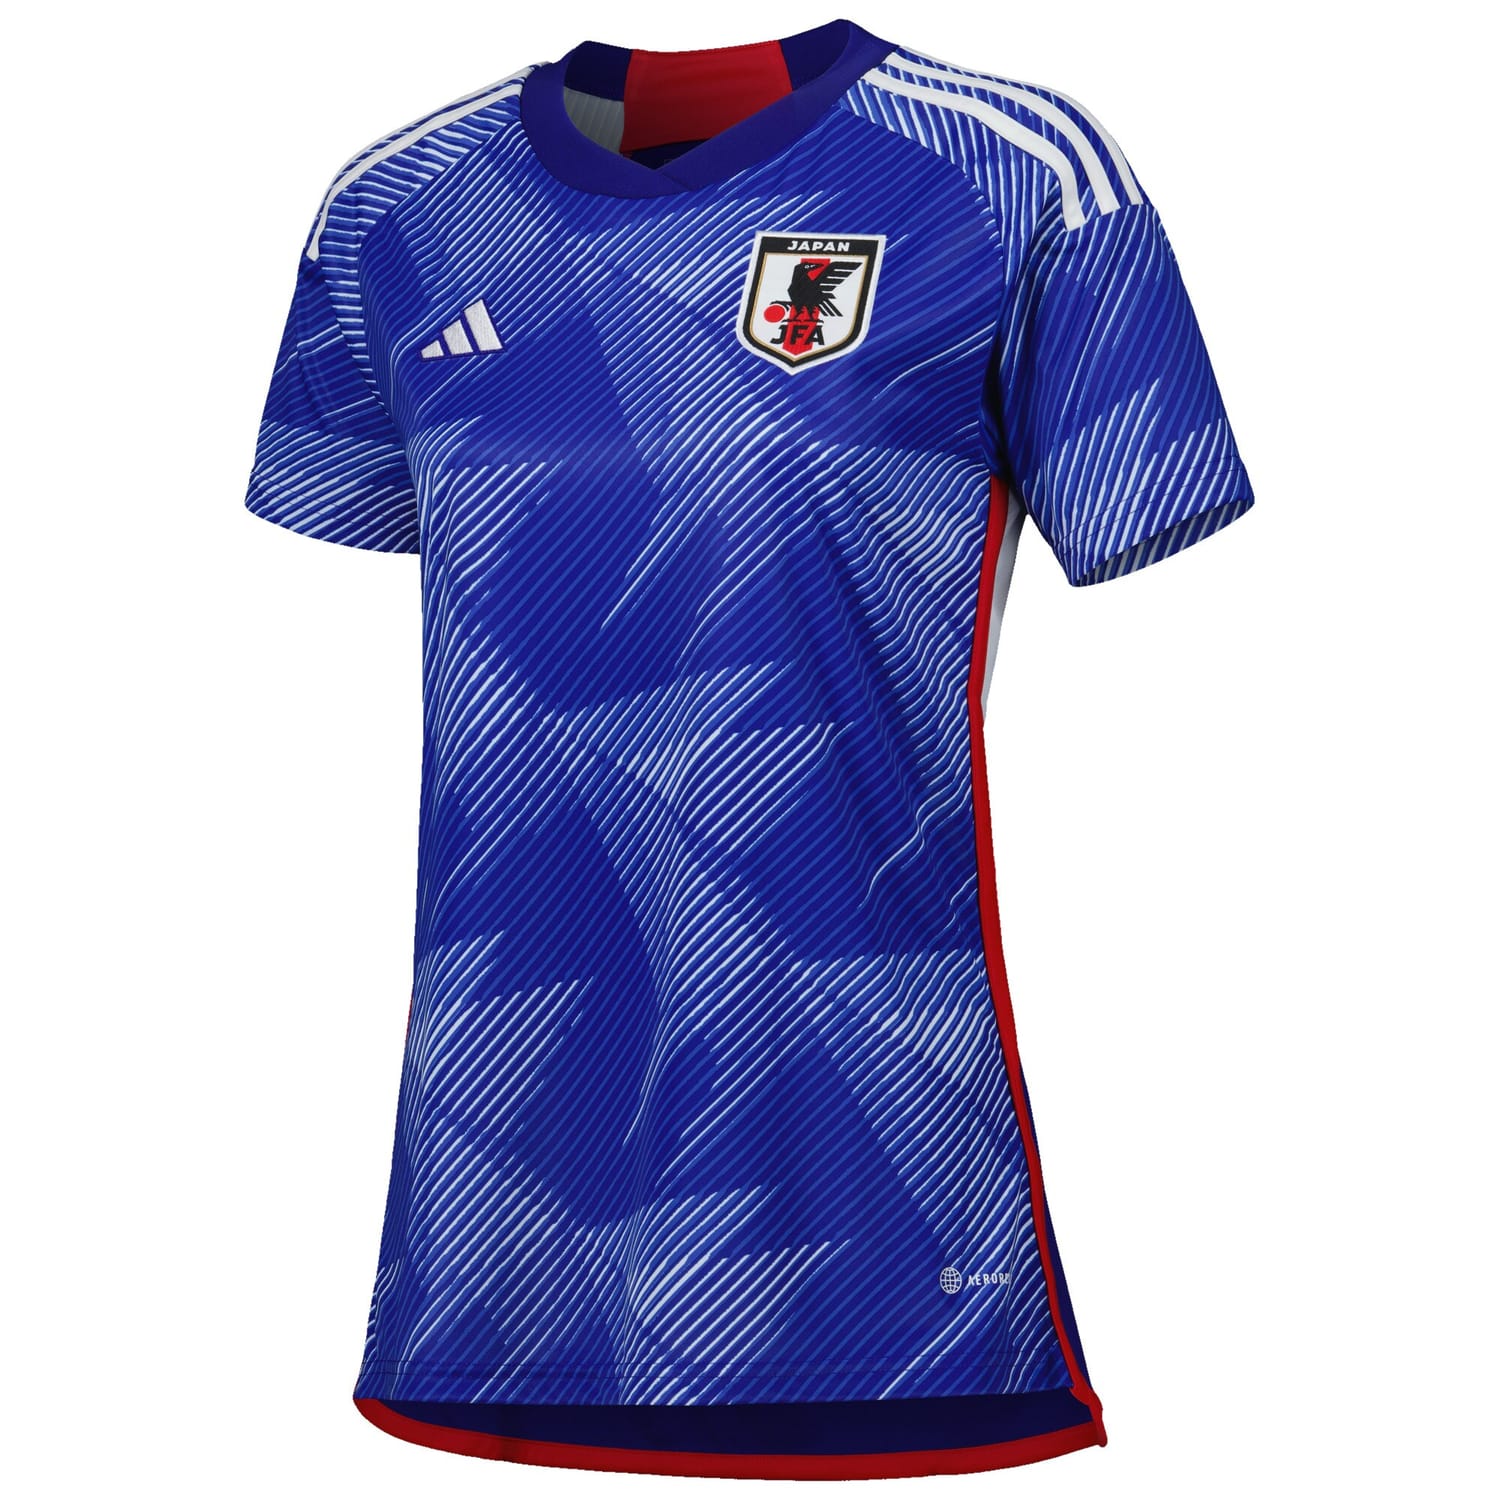 Japan National Team Home Jersey Shirt Blue 2022-23 for Women